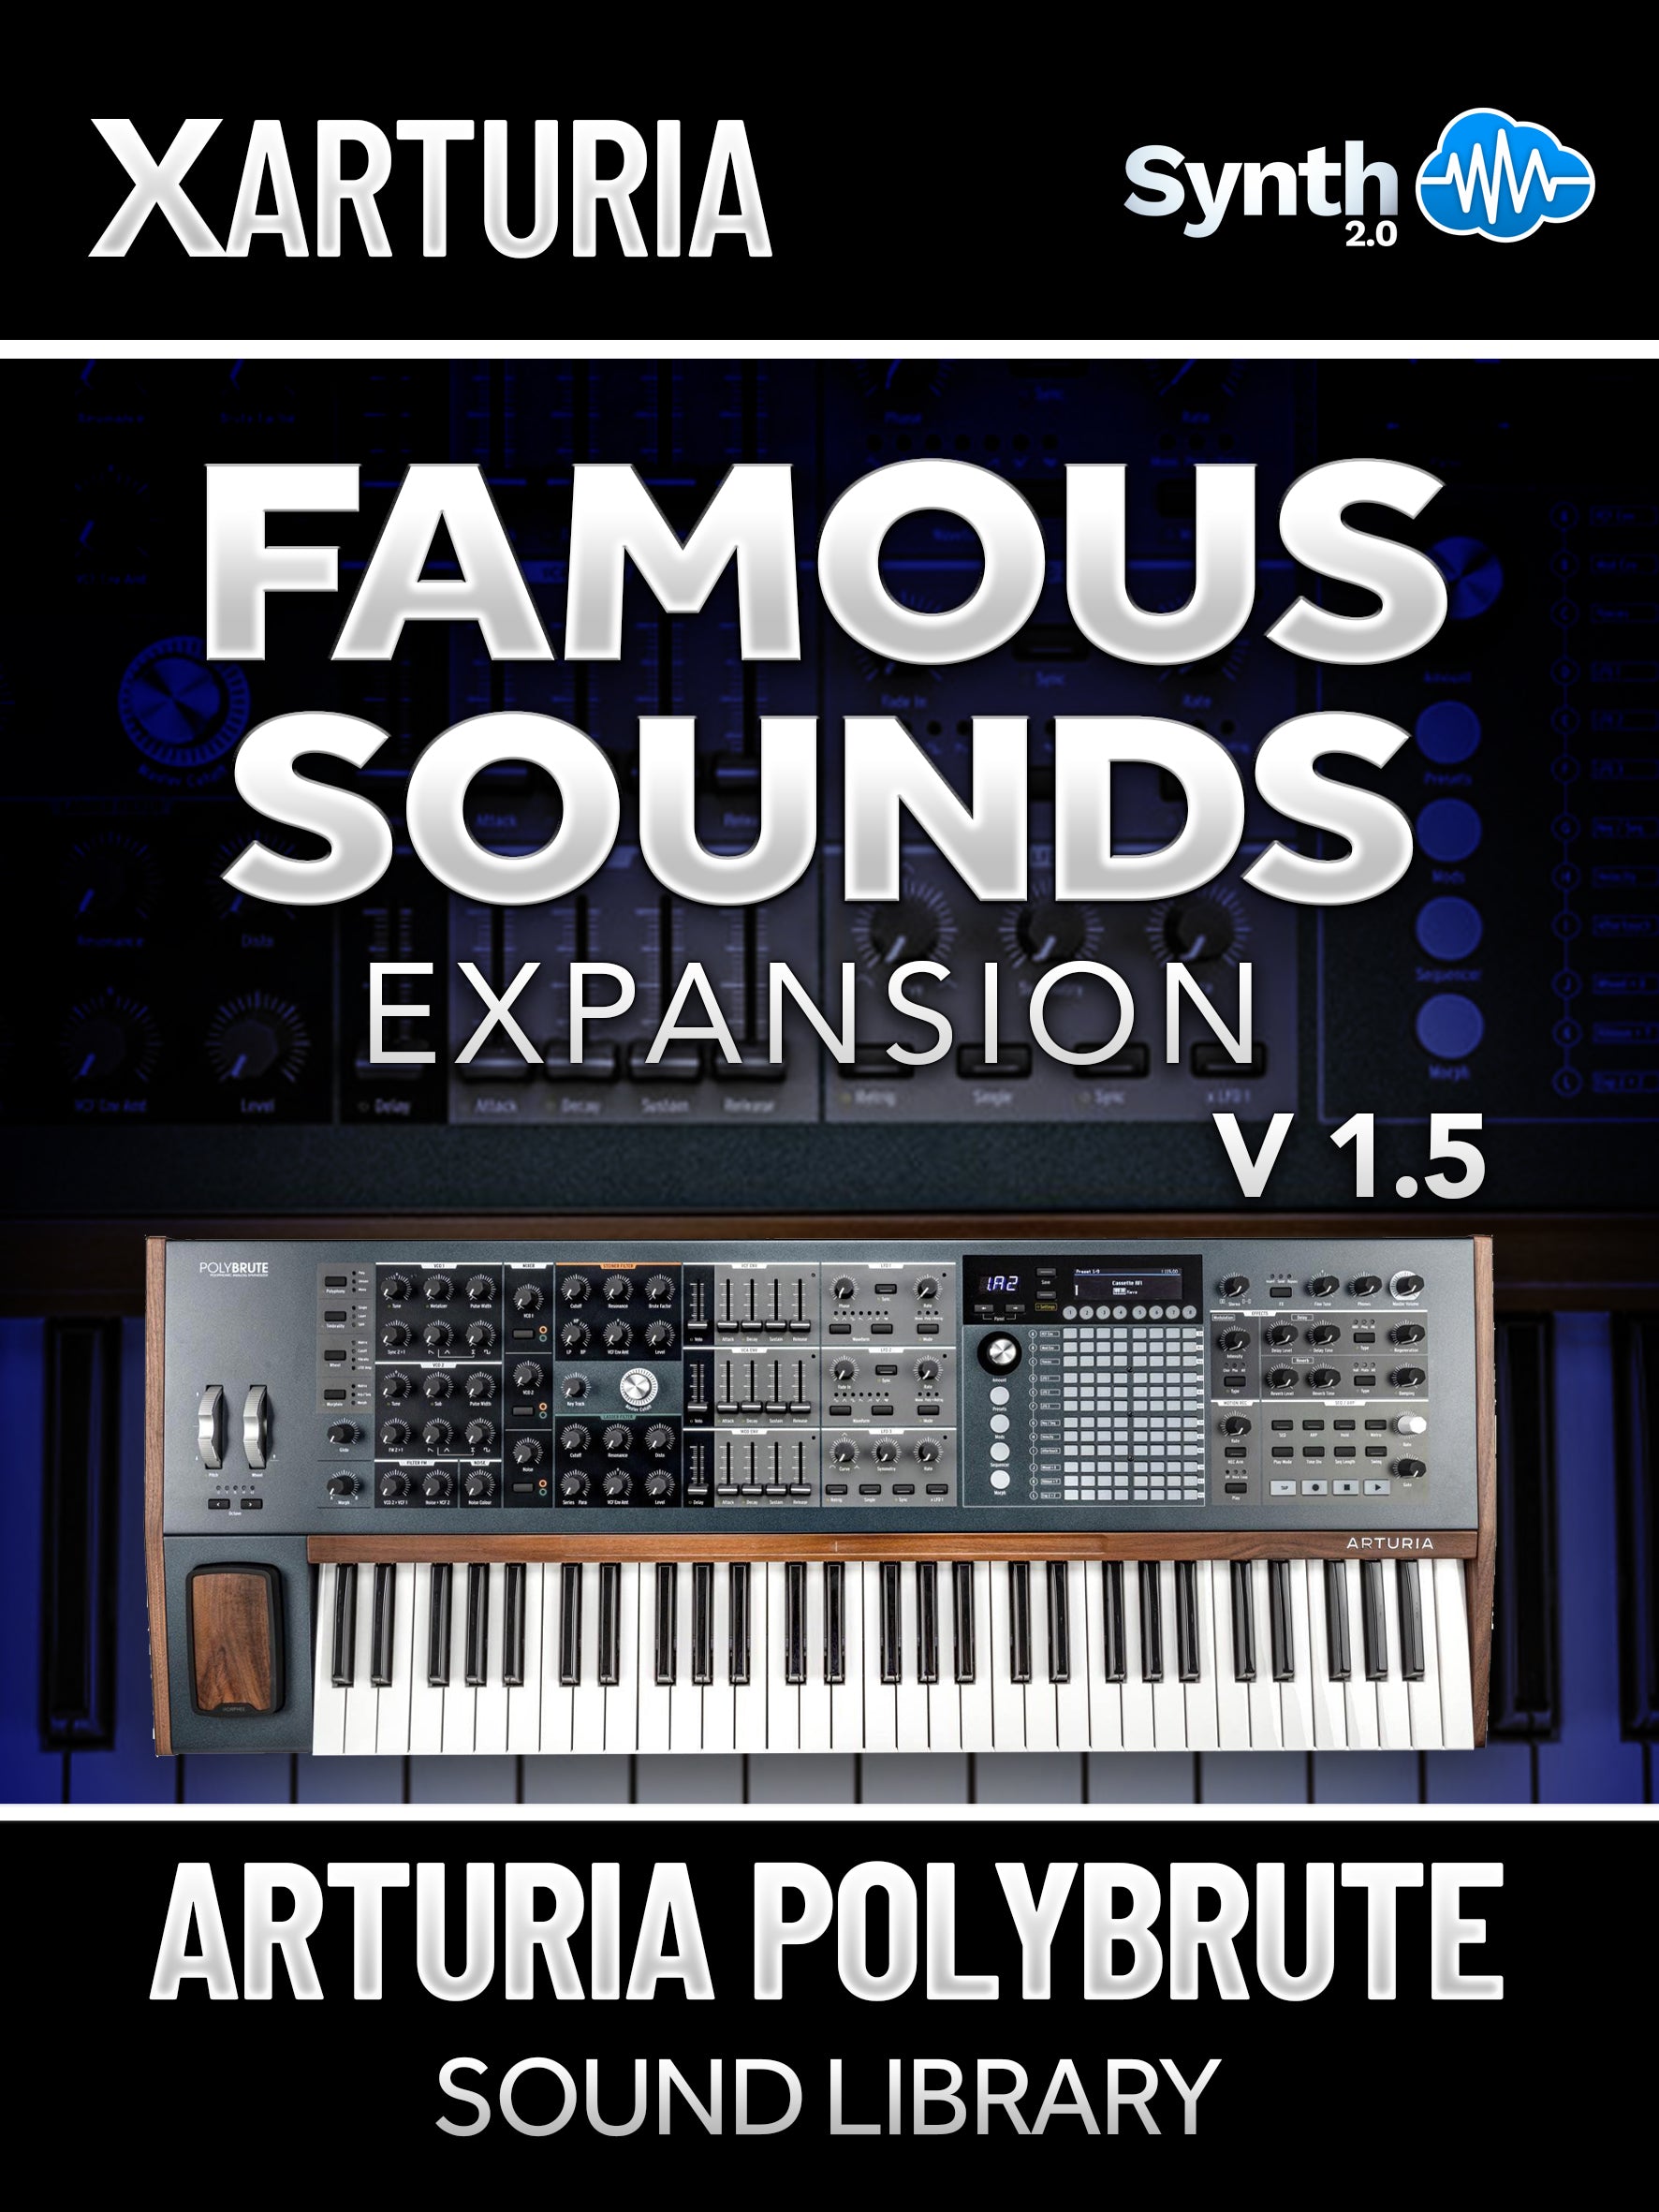 DVK024 - Famous Sounds Vol.1.5 EXPANSION - Arturia PolyBrute ( 8 presets )